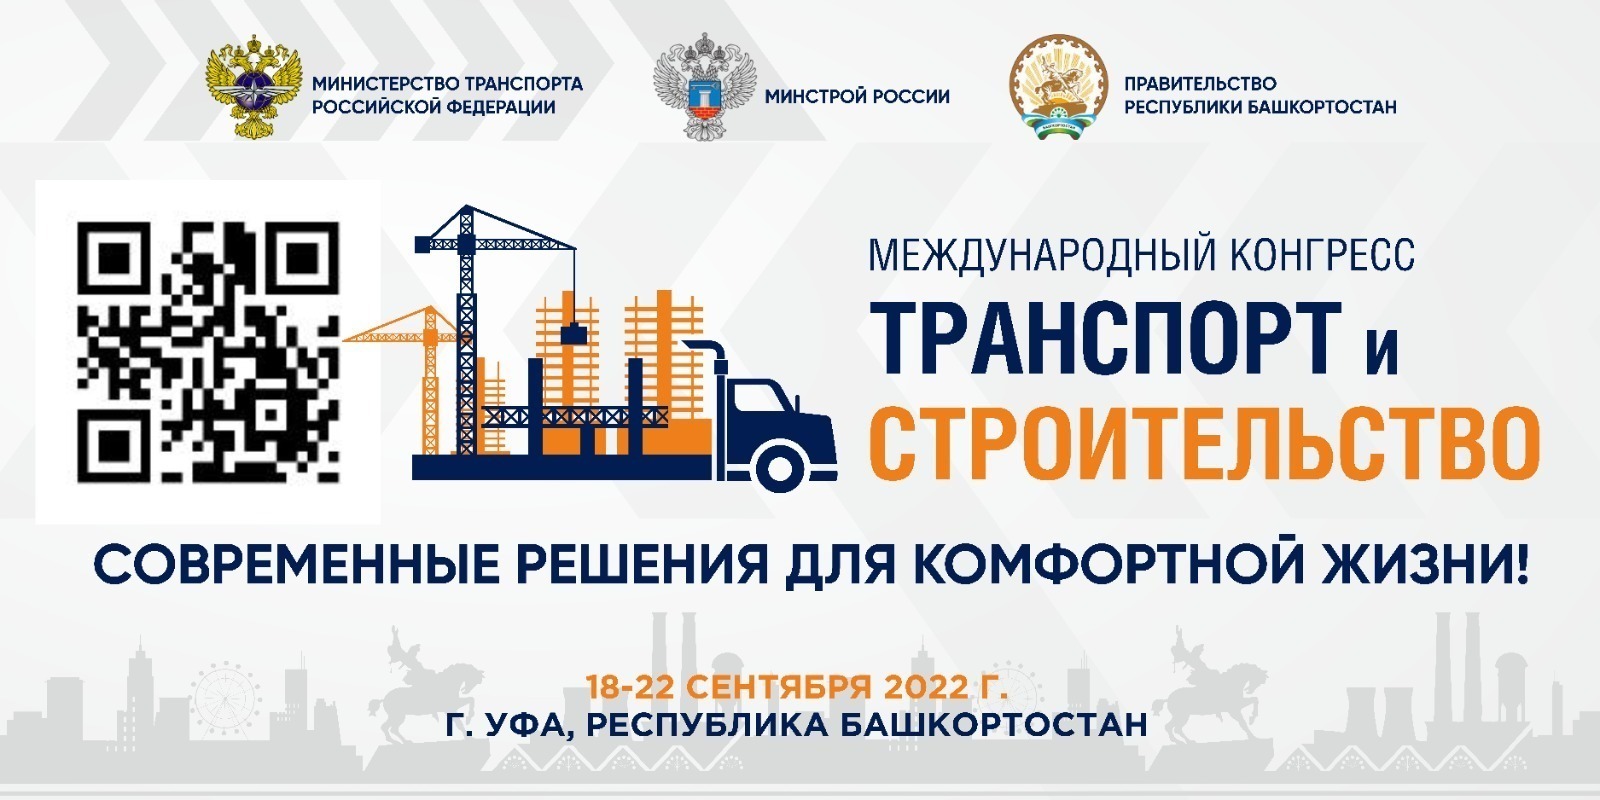 С 18 по 22 сентября в Башкирии пройдет Международный конгресс «Транспорт и строительство».